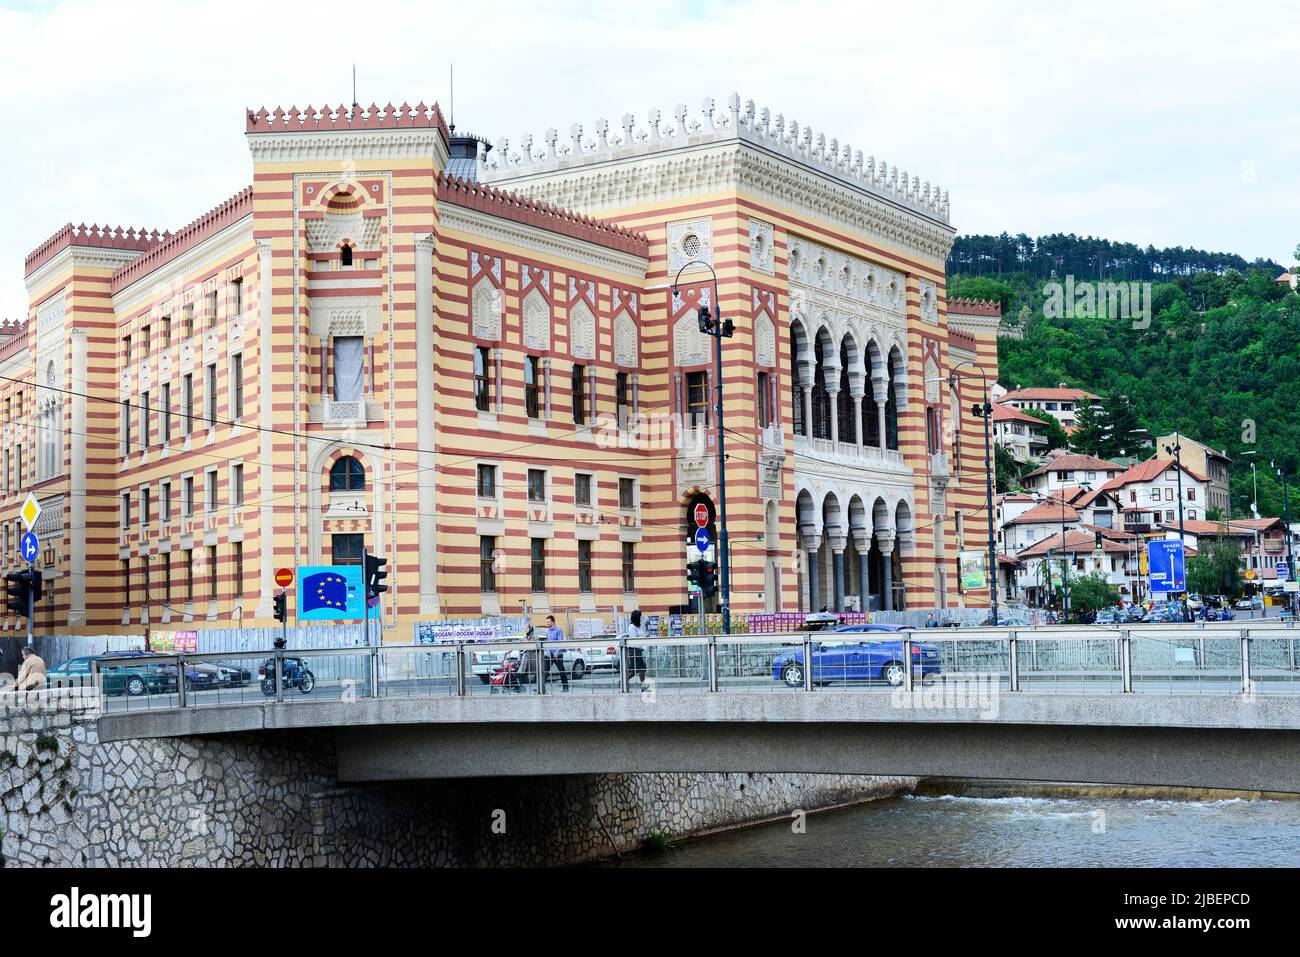 Sarajevo city hall, Bosnia and Herzegovina. Stock Photo